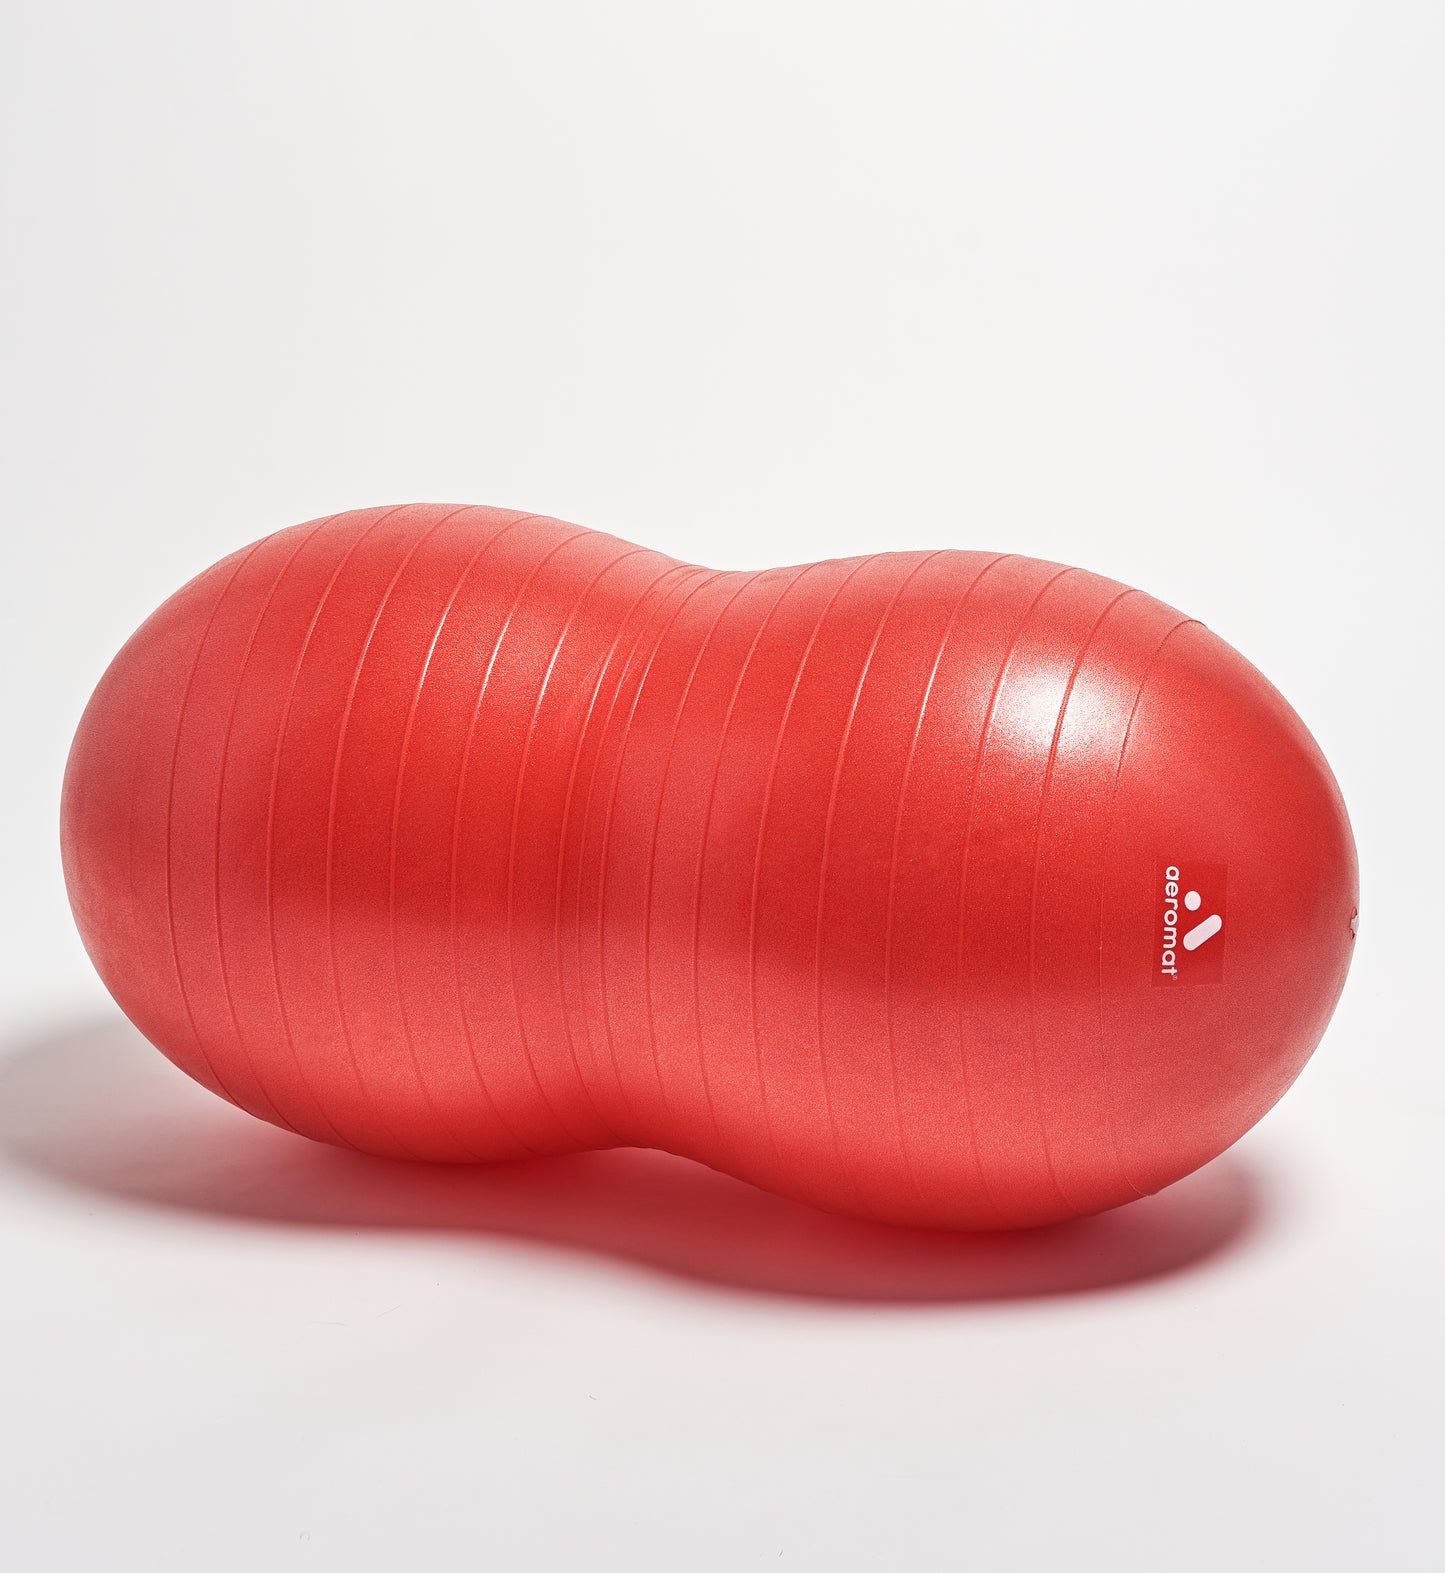 60 cm diameter (Red)